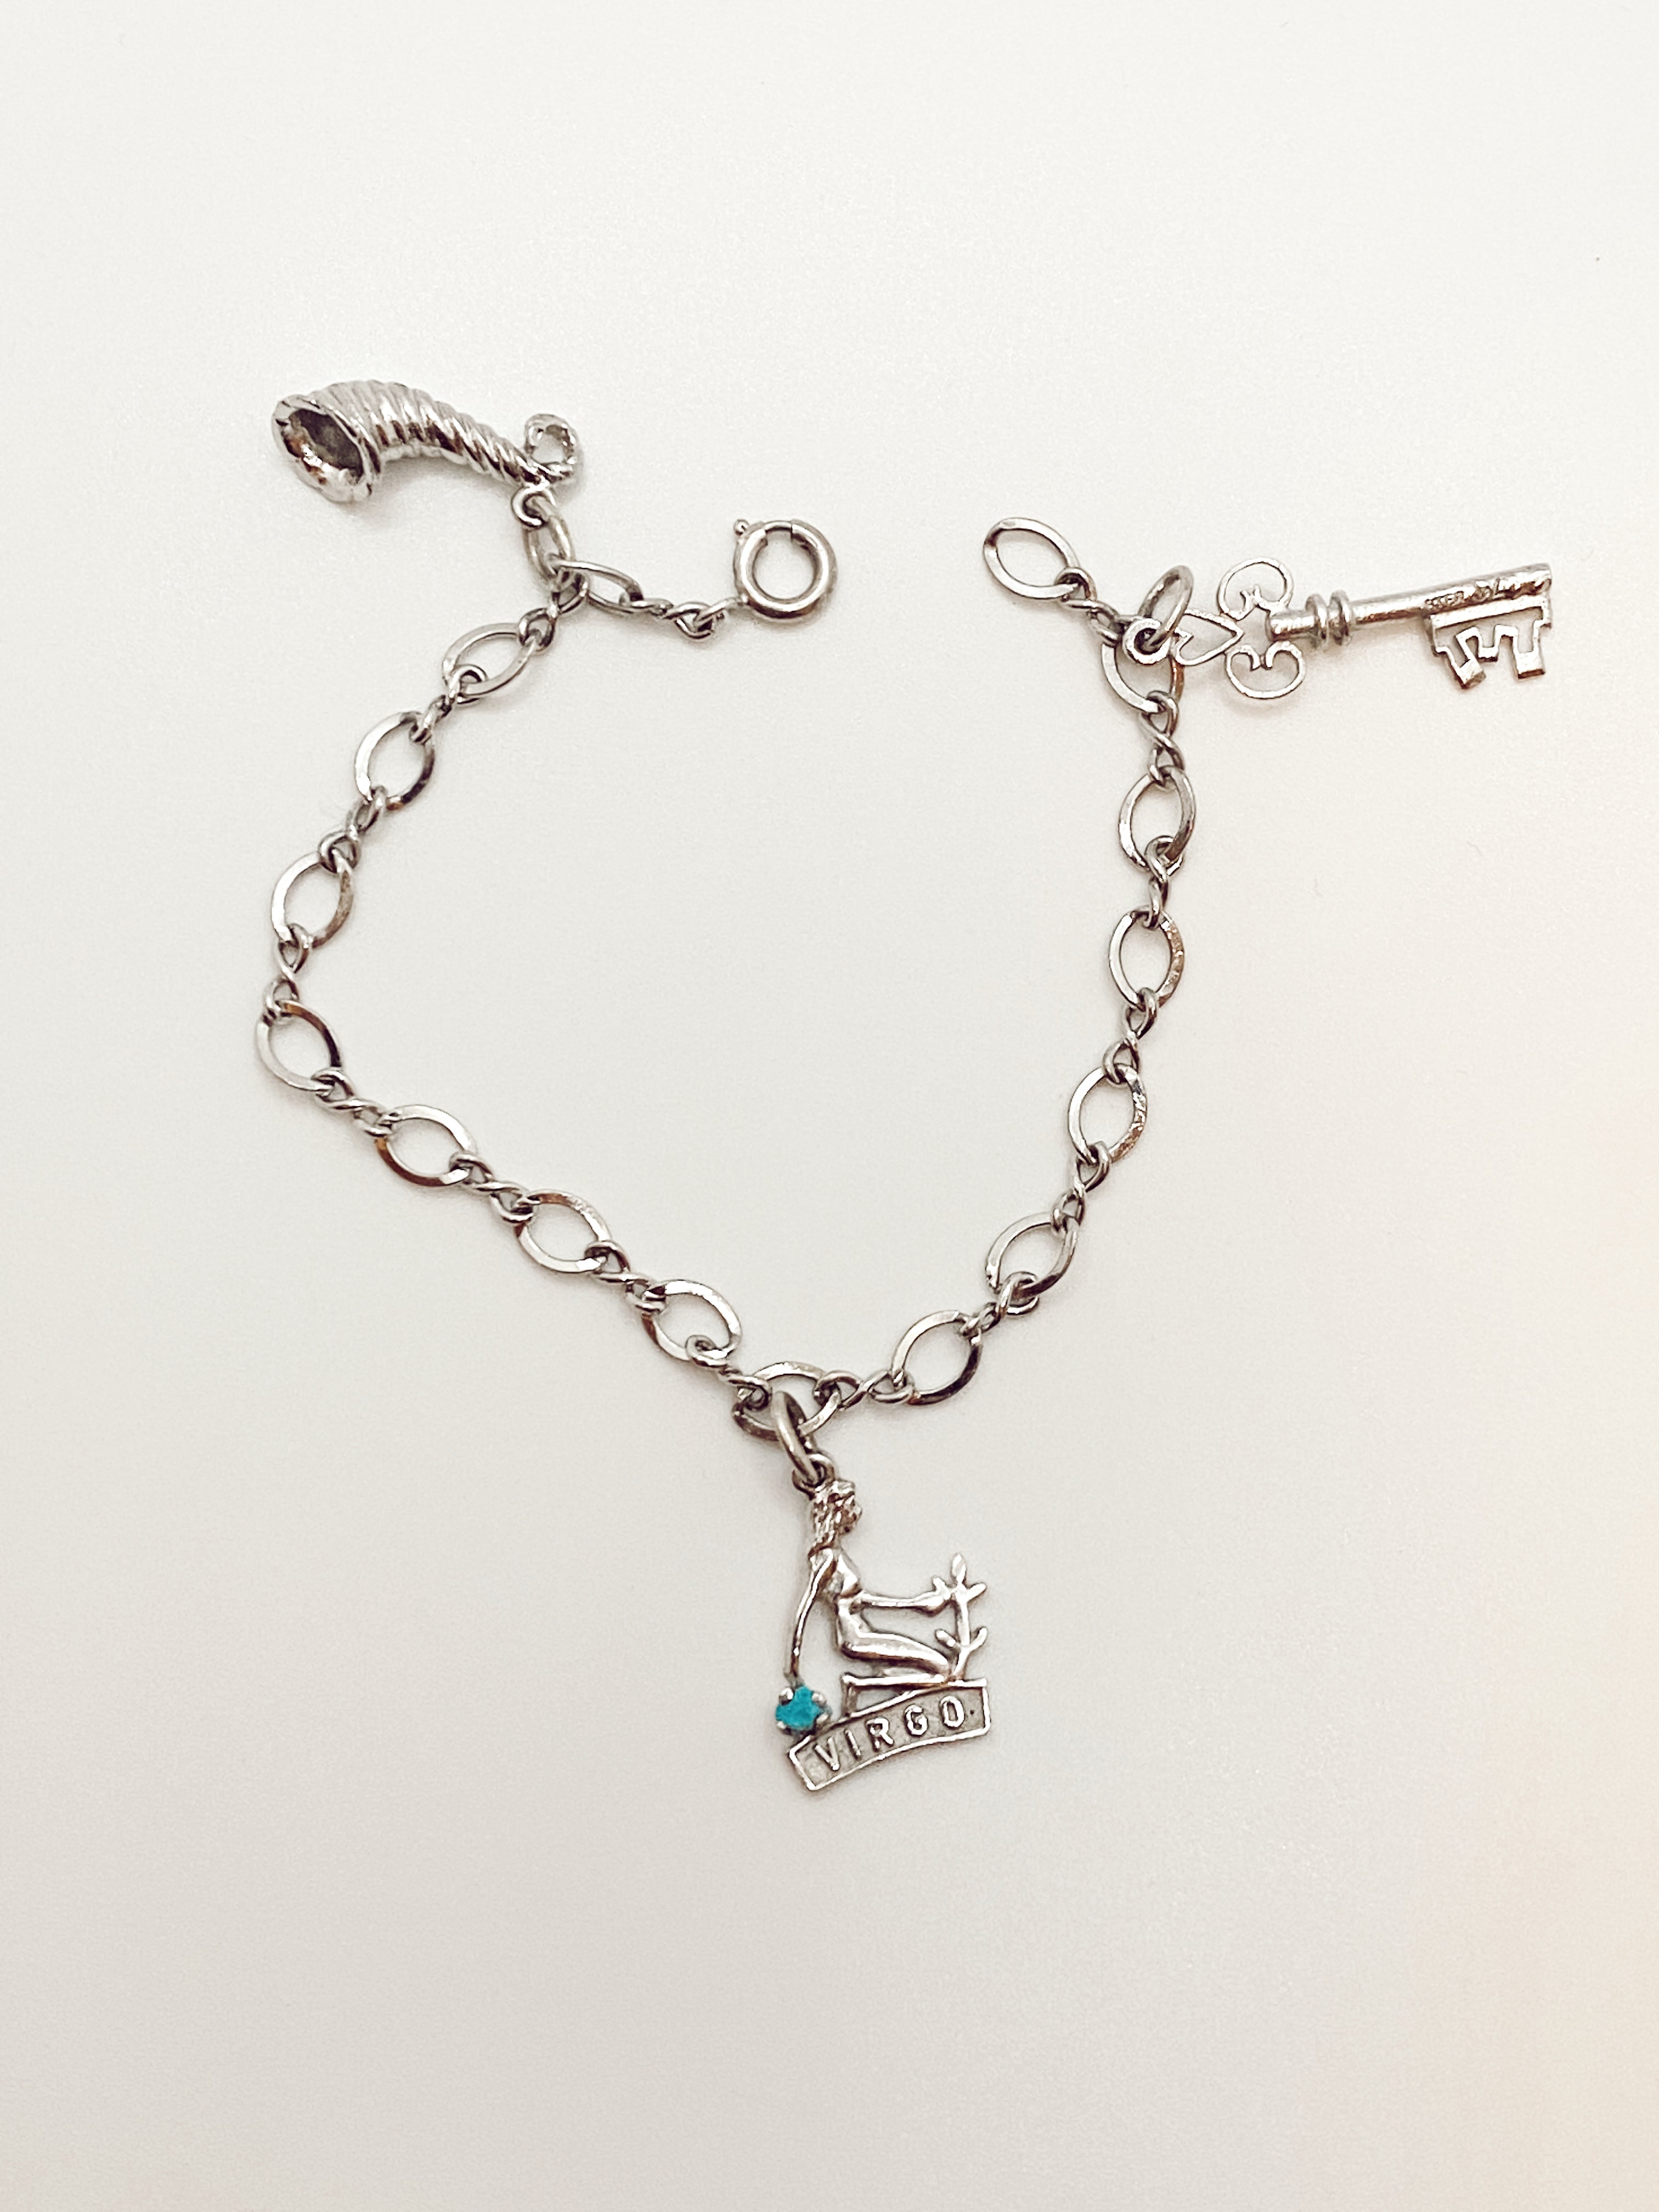 Charm Bracelet with Virgo Zodiac, Cornucopia, and Heart Key Charm